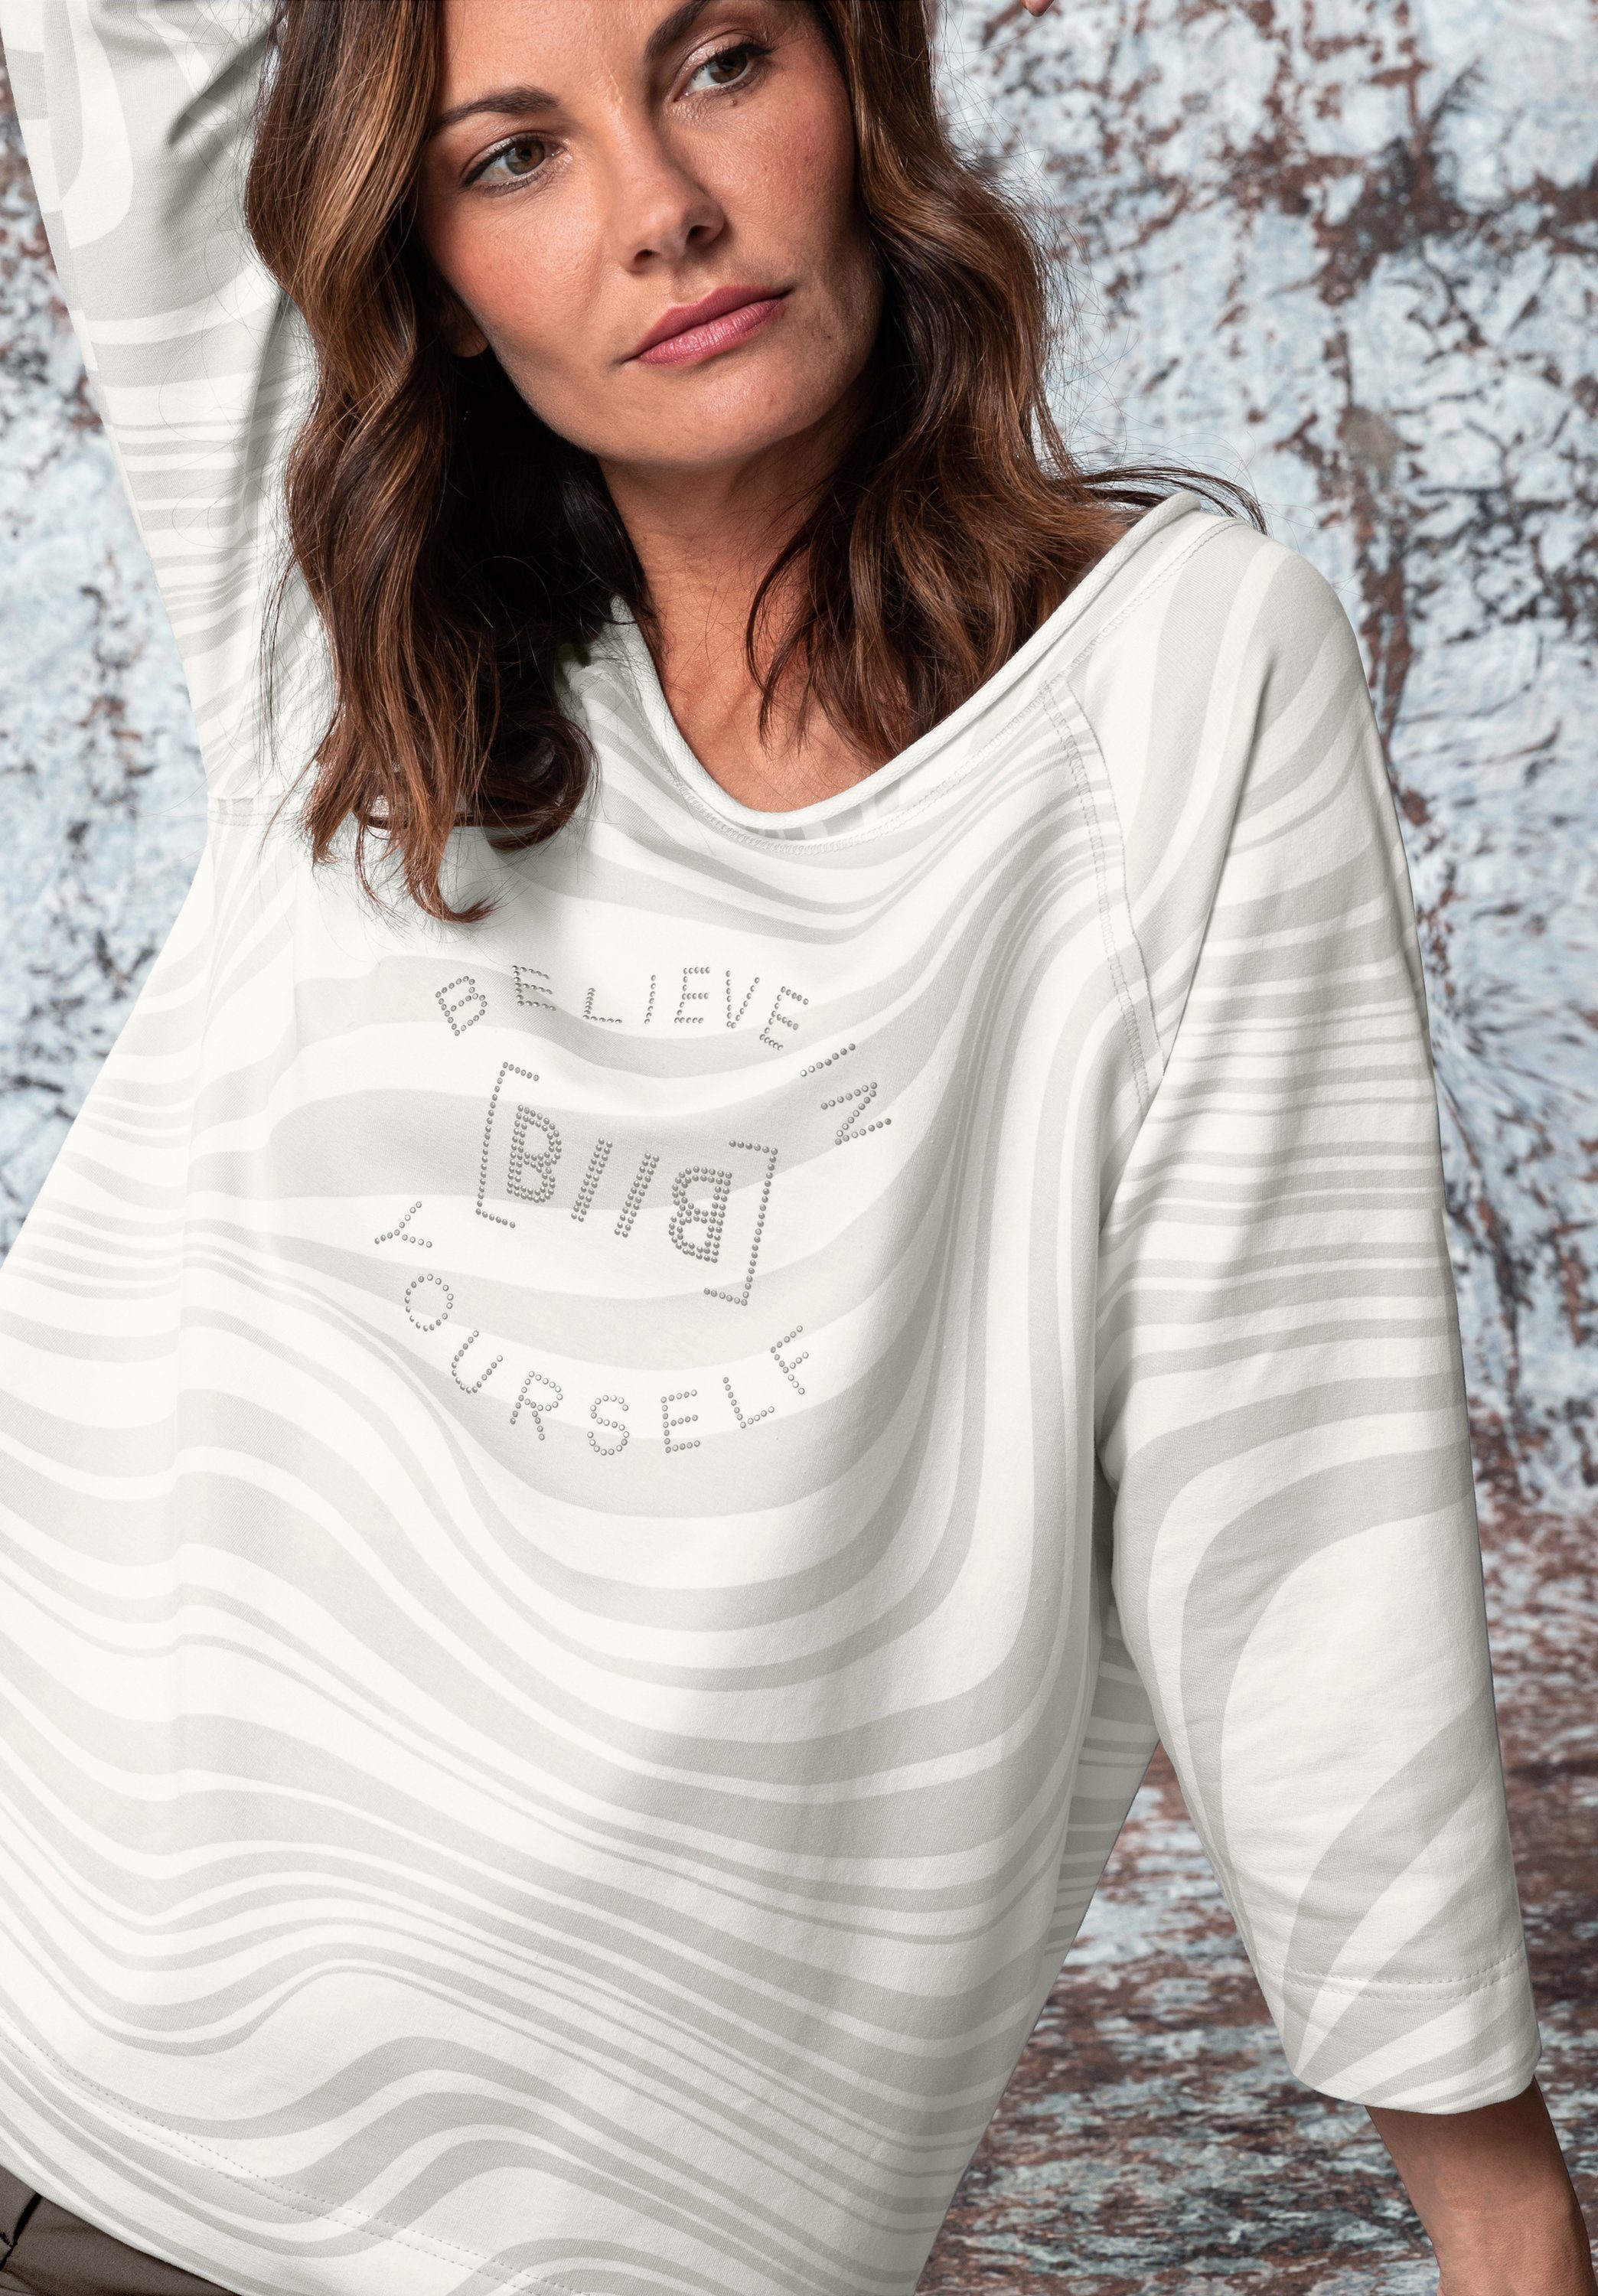 bianca Print-Shirt MALA mit graphischem Druck und angesagtem Wording